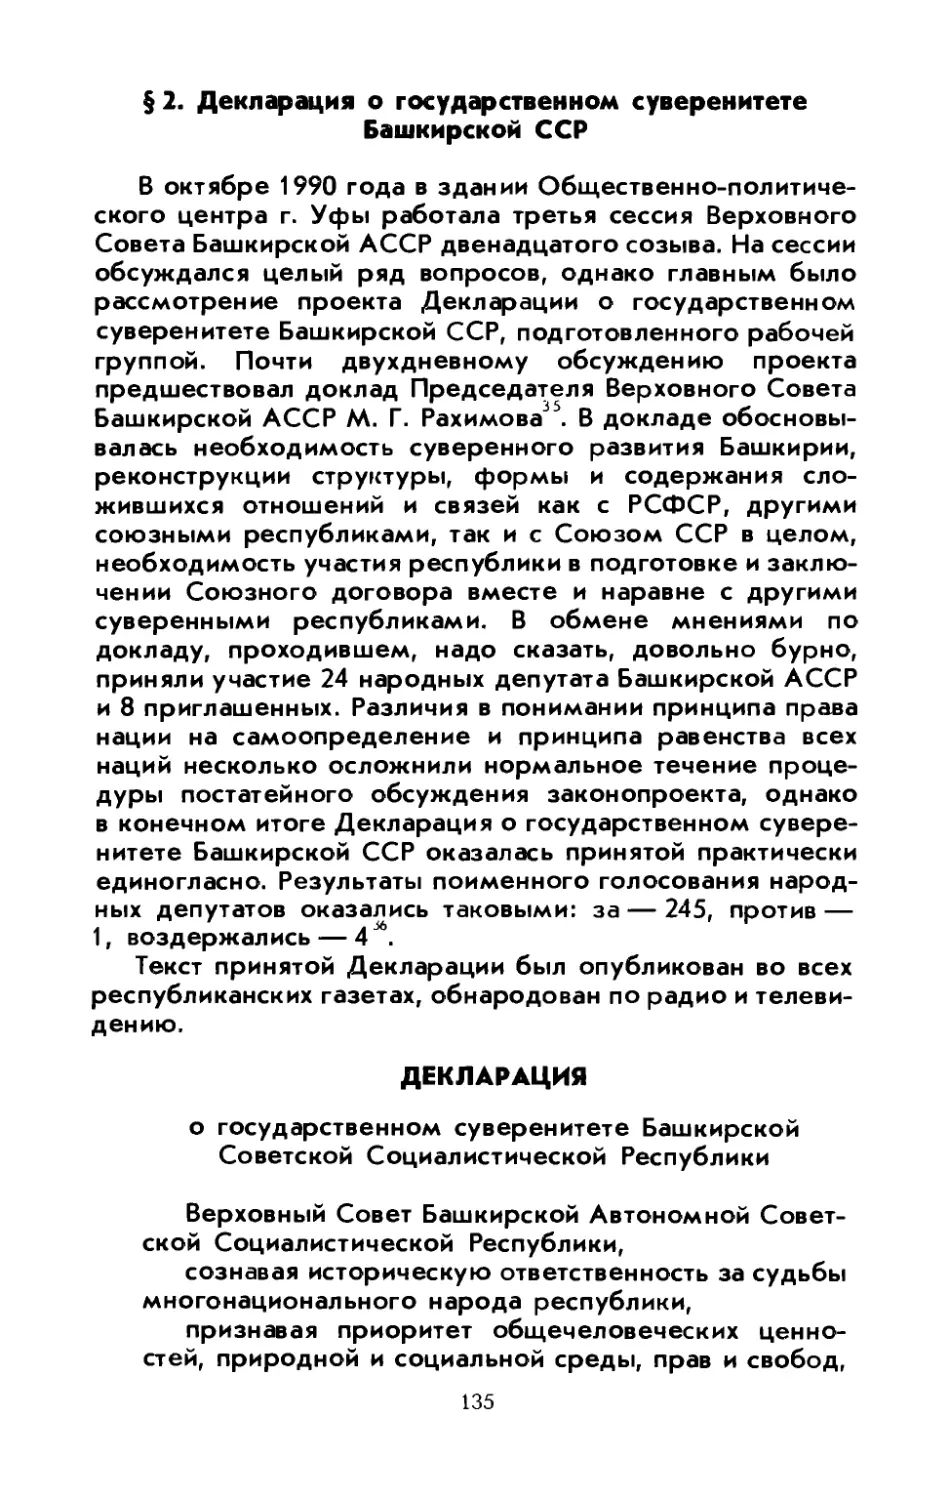 § 2. Декларация о государственном суверенитете Башкирской ССР